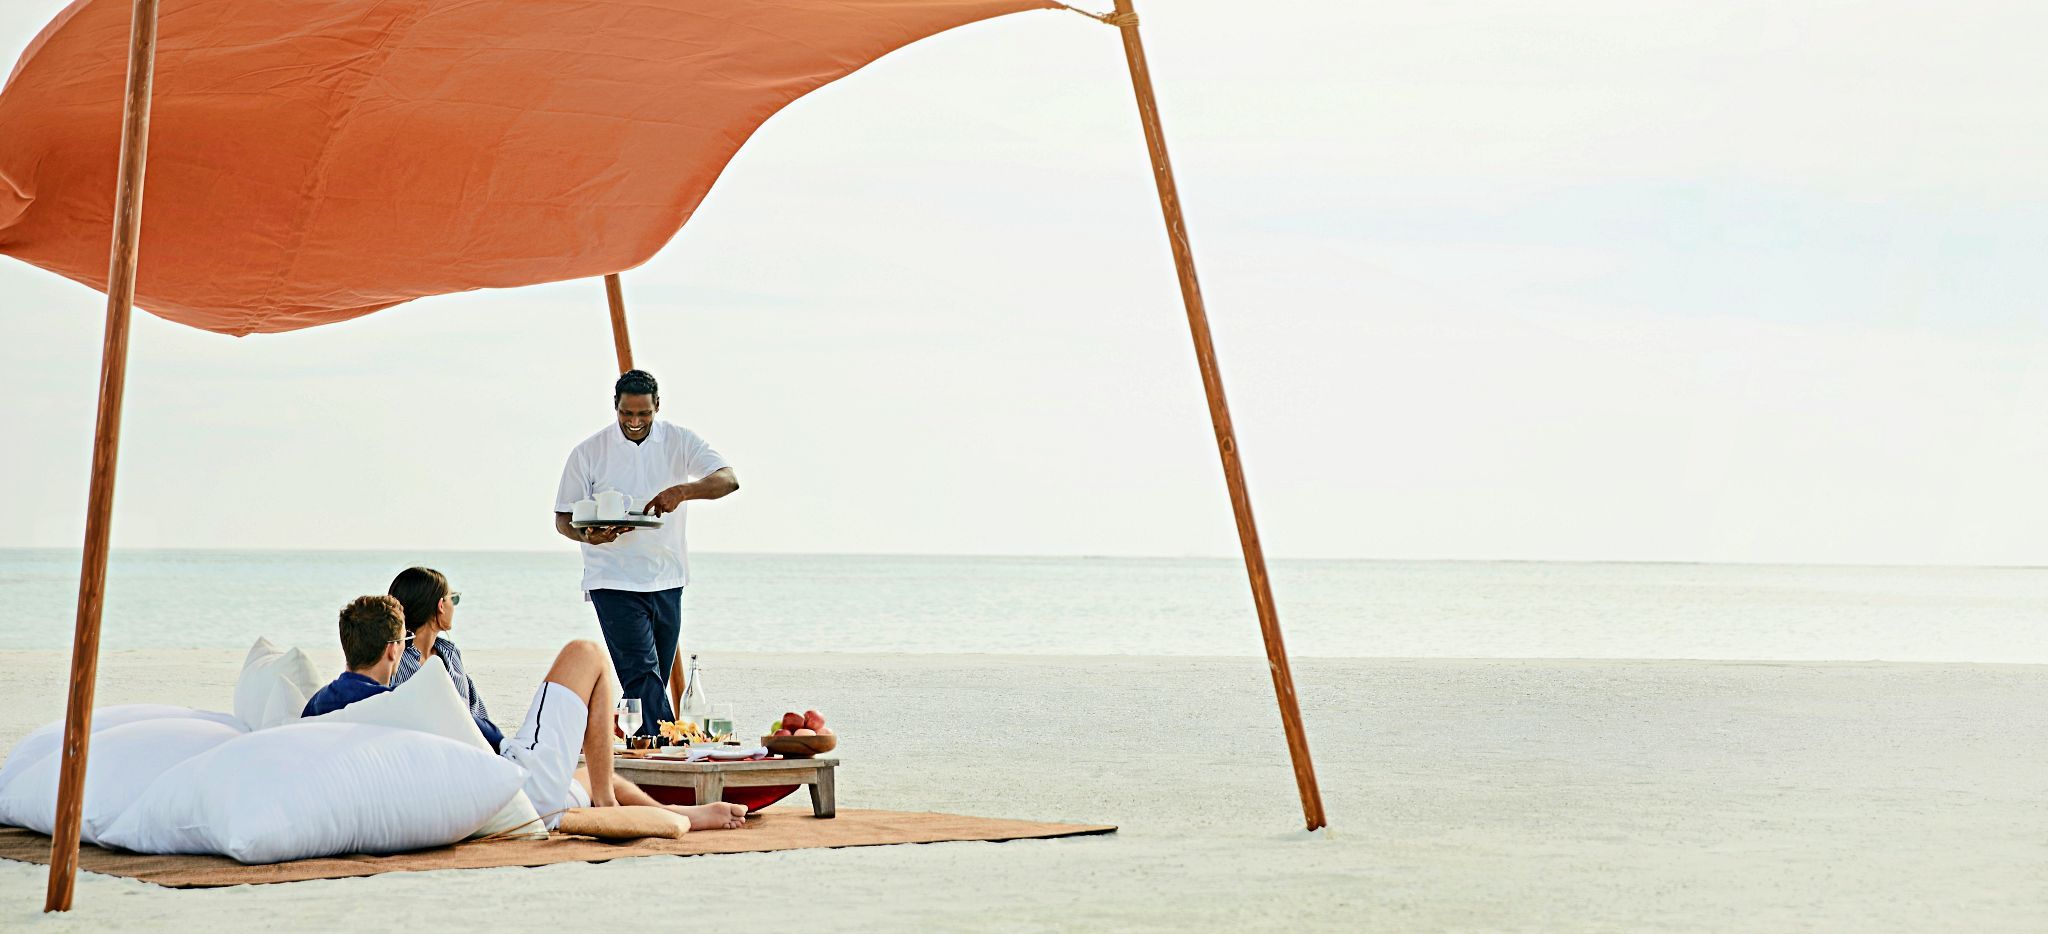 Privates Picknick auf einer Sandbank auf den Malediven, veranstaltet 